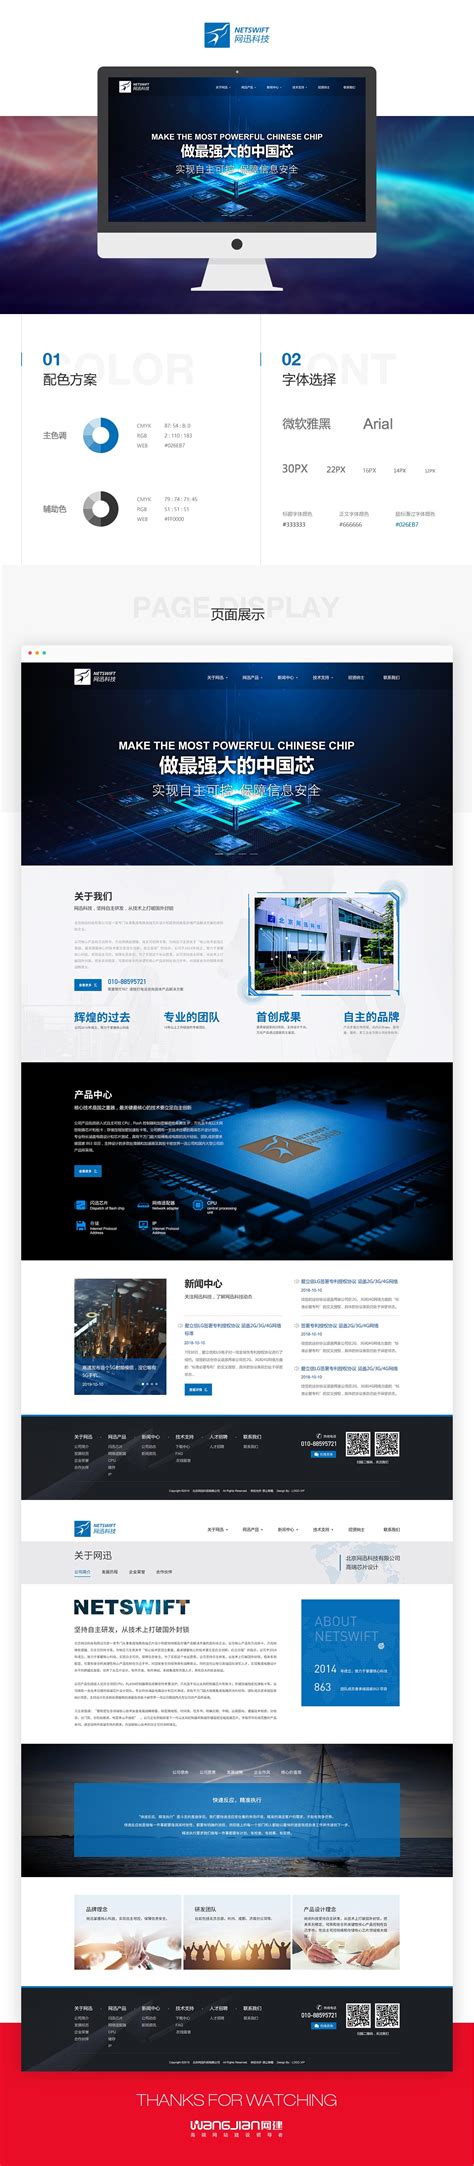 生意街-网站建设案例|网站设计案例|网站制作案例-北京一度旭展文化传媒有限公司